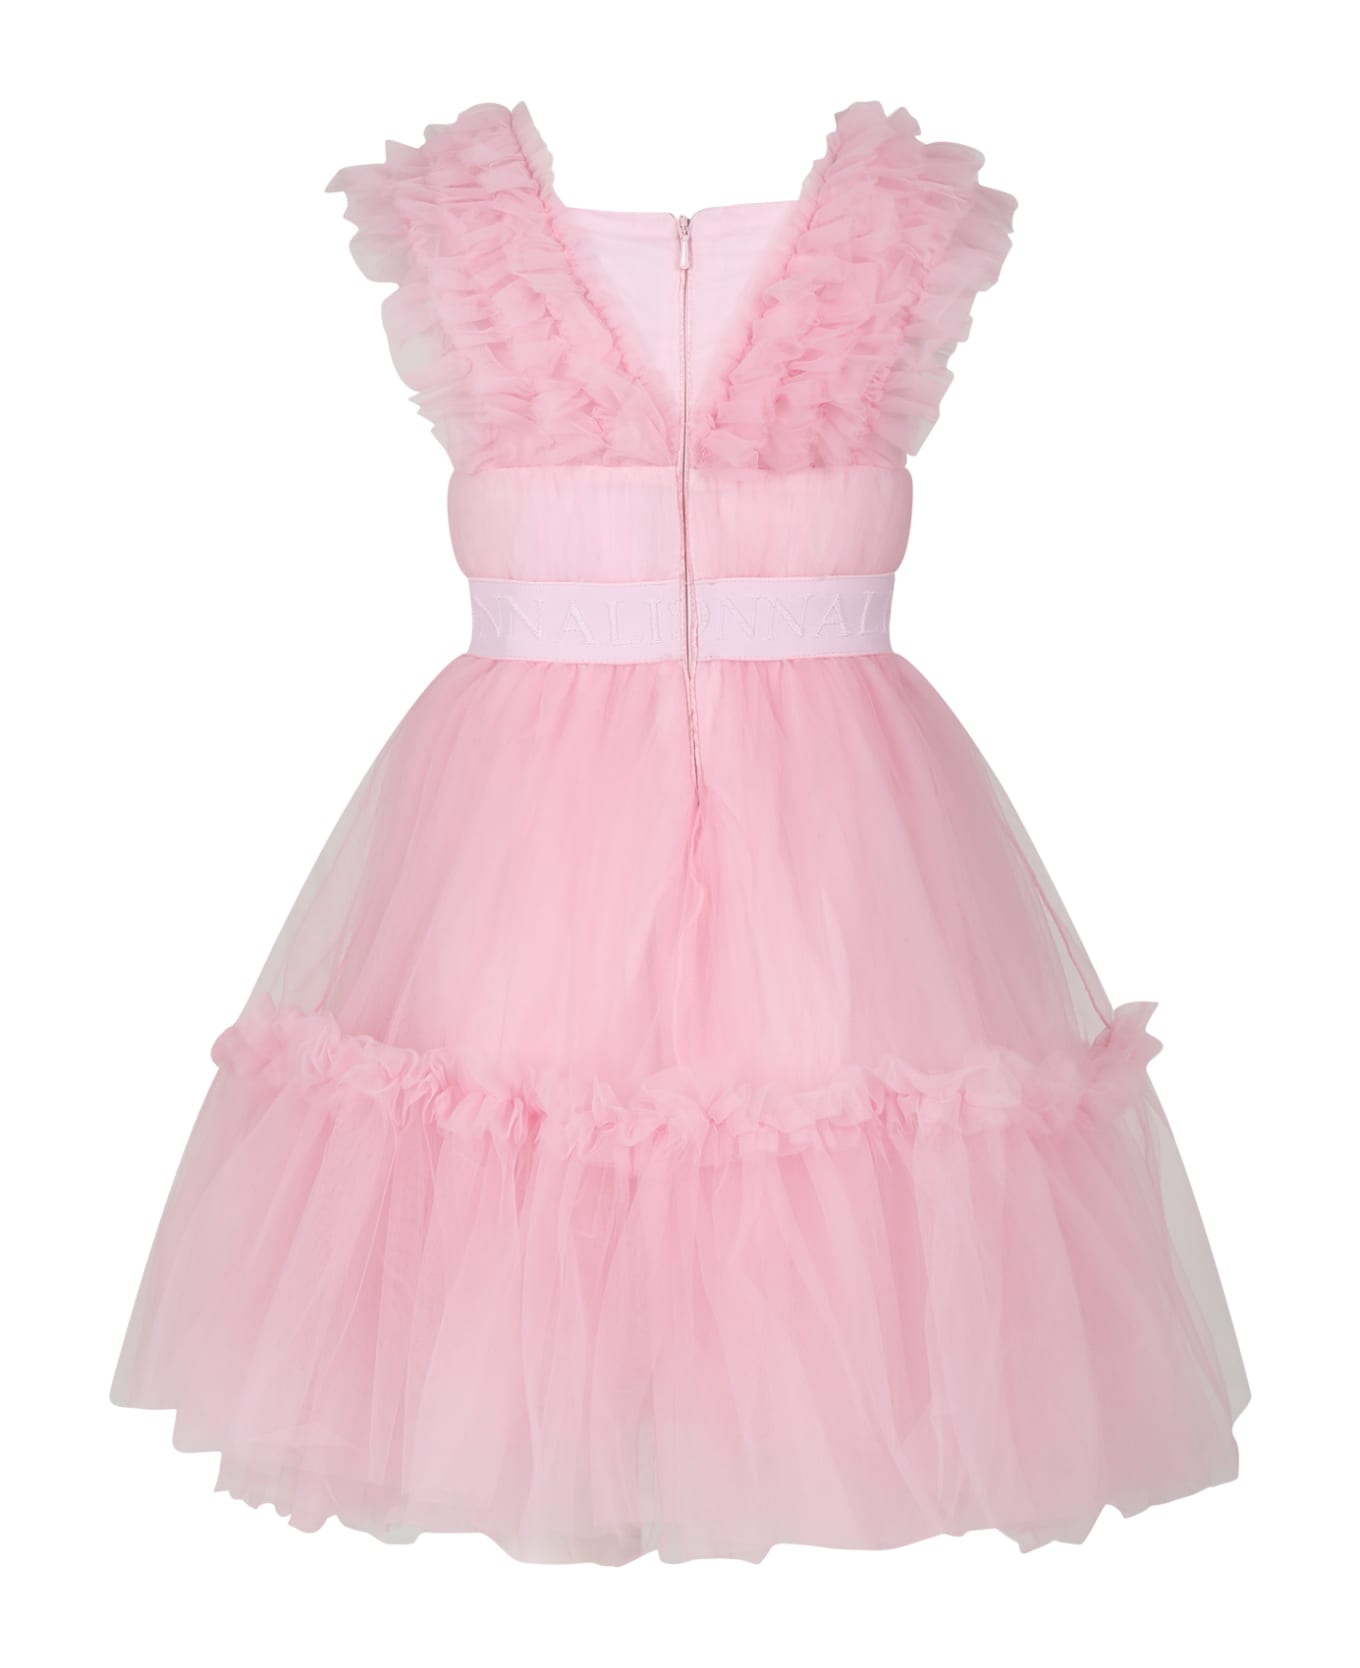 Monnalisa Elegant Pink Dress For Girl - Pink